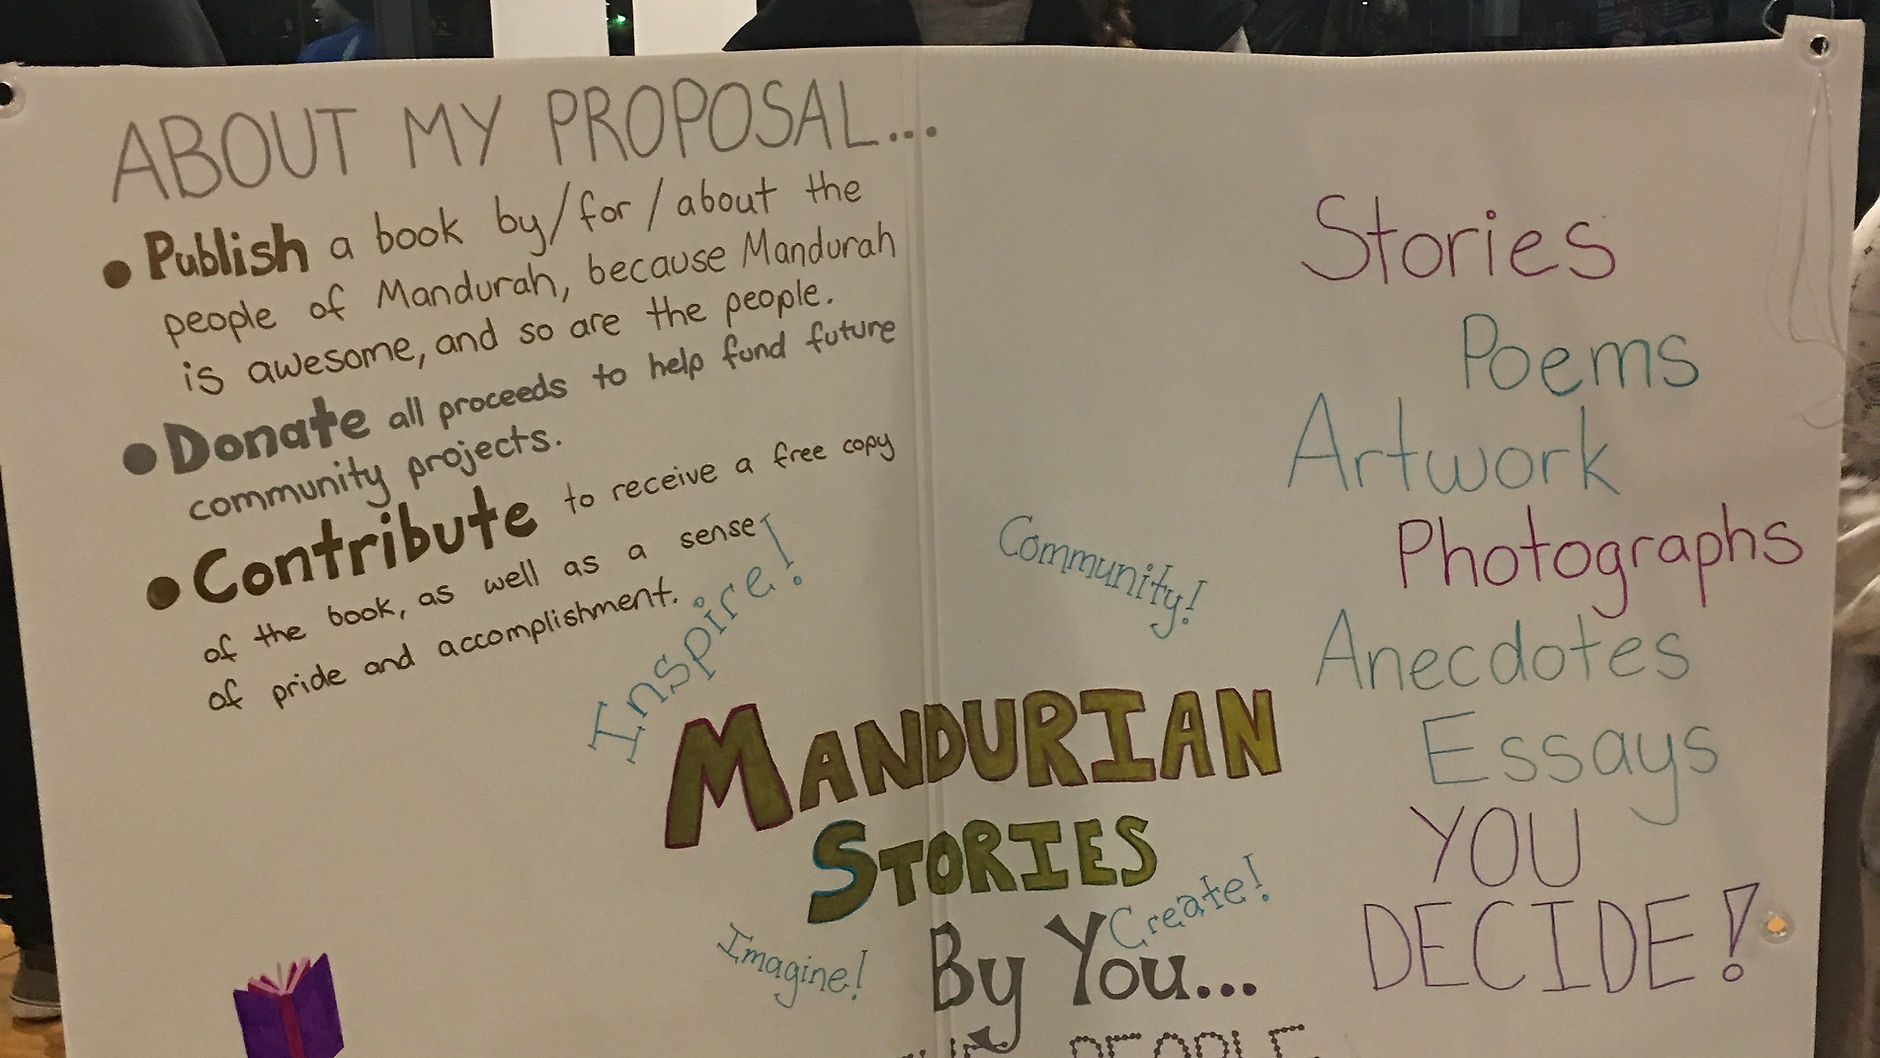 Mandurian Stories